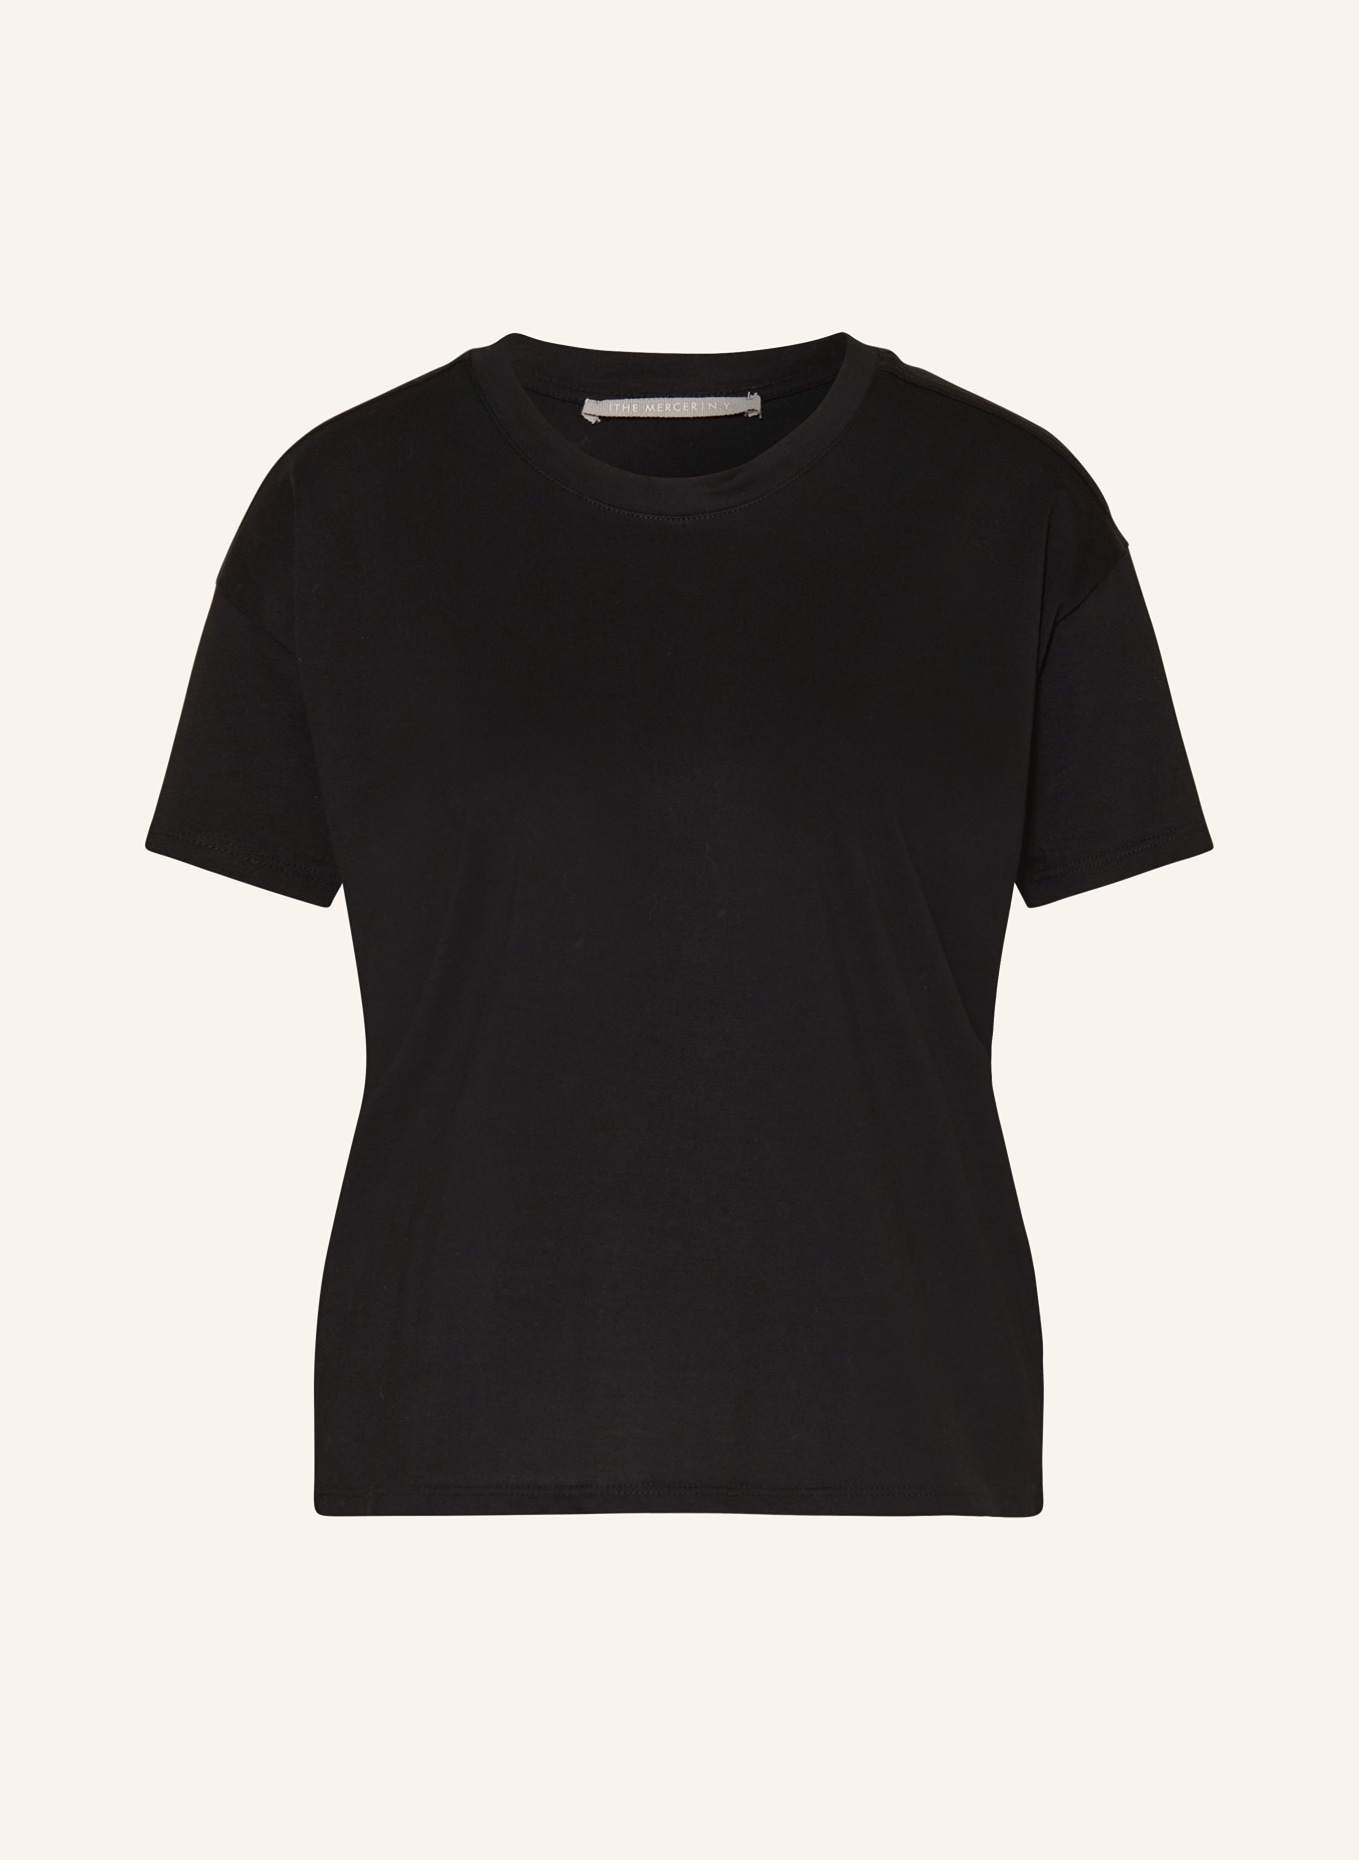 (THE MERCER) N.Y. T-shirt, Color: BLACK (Image 1)